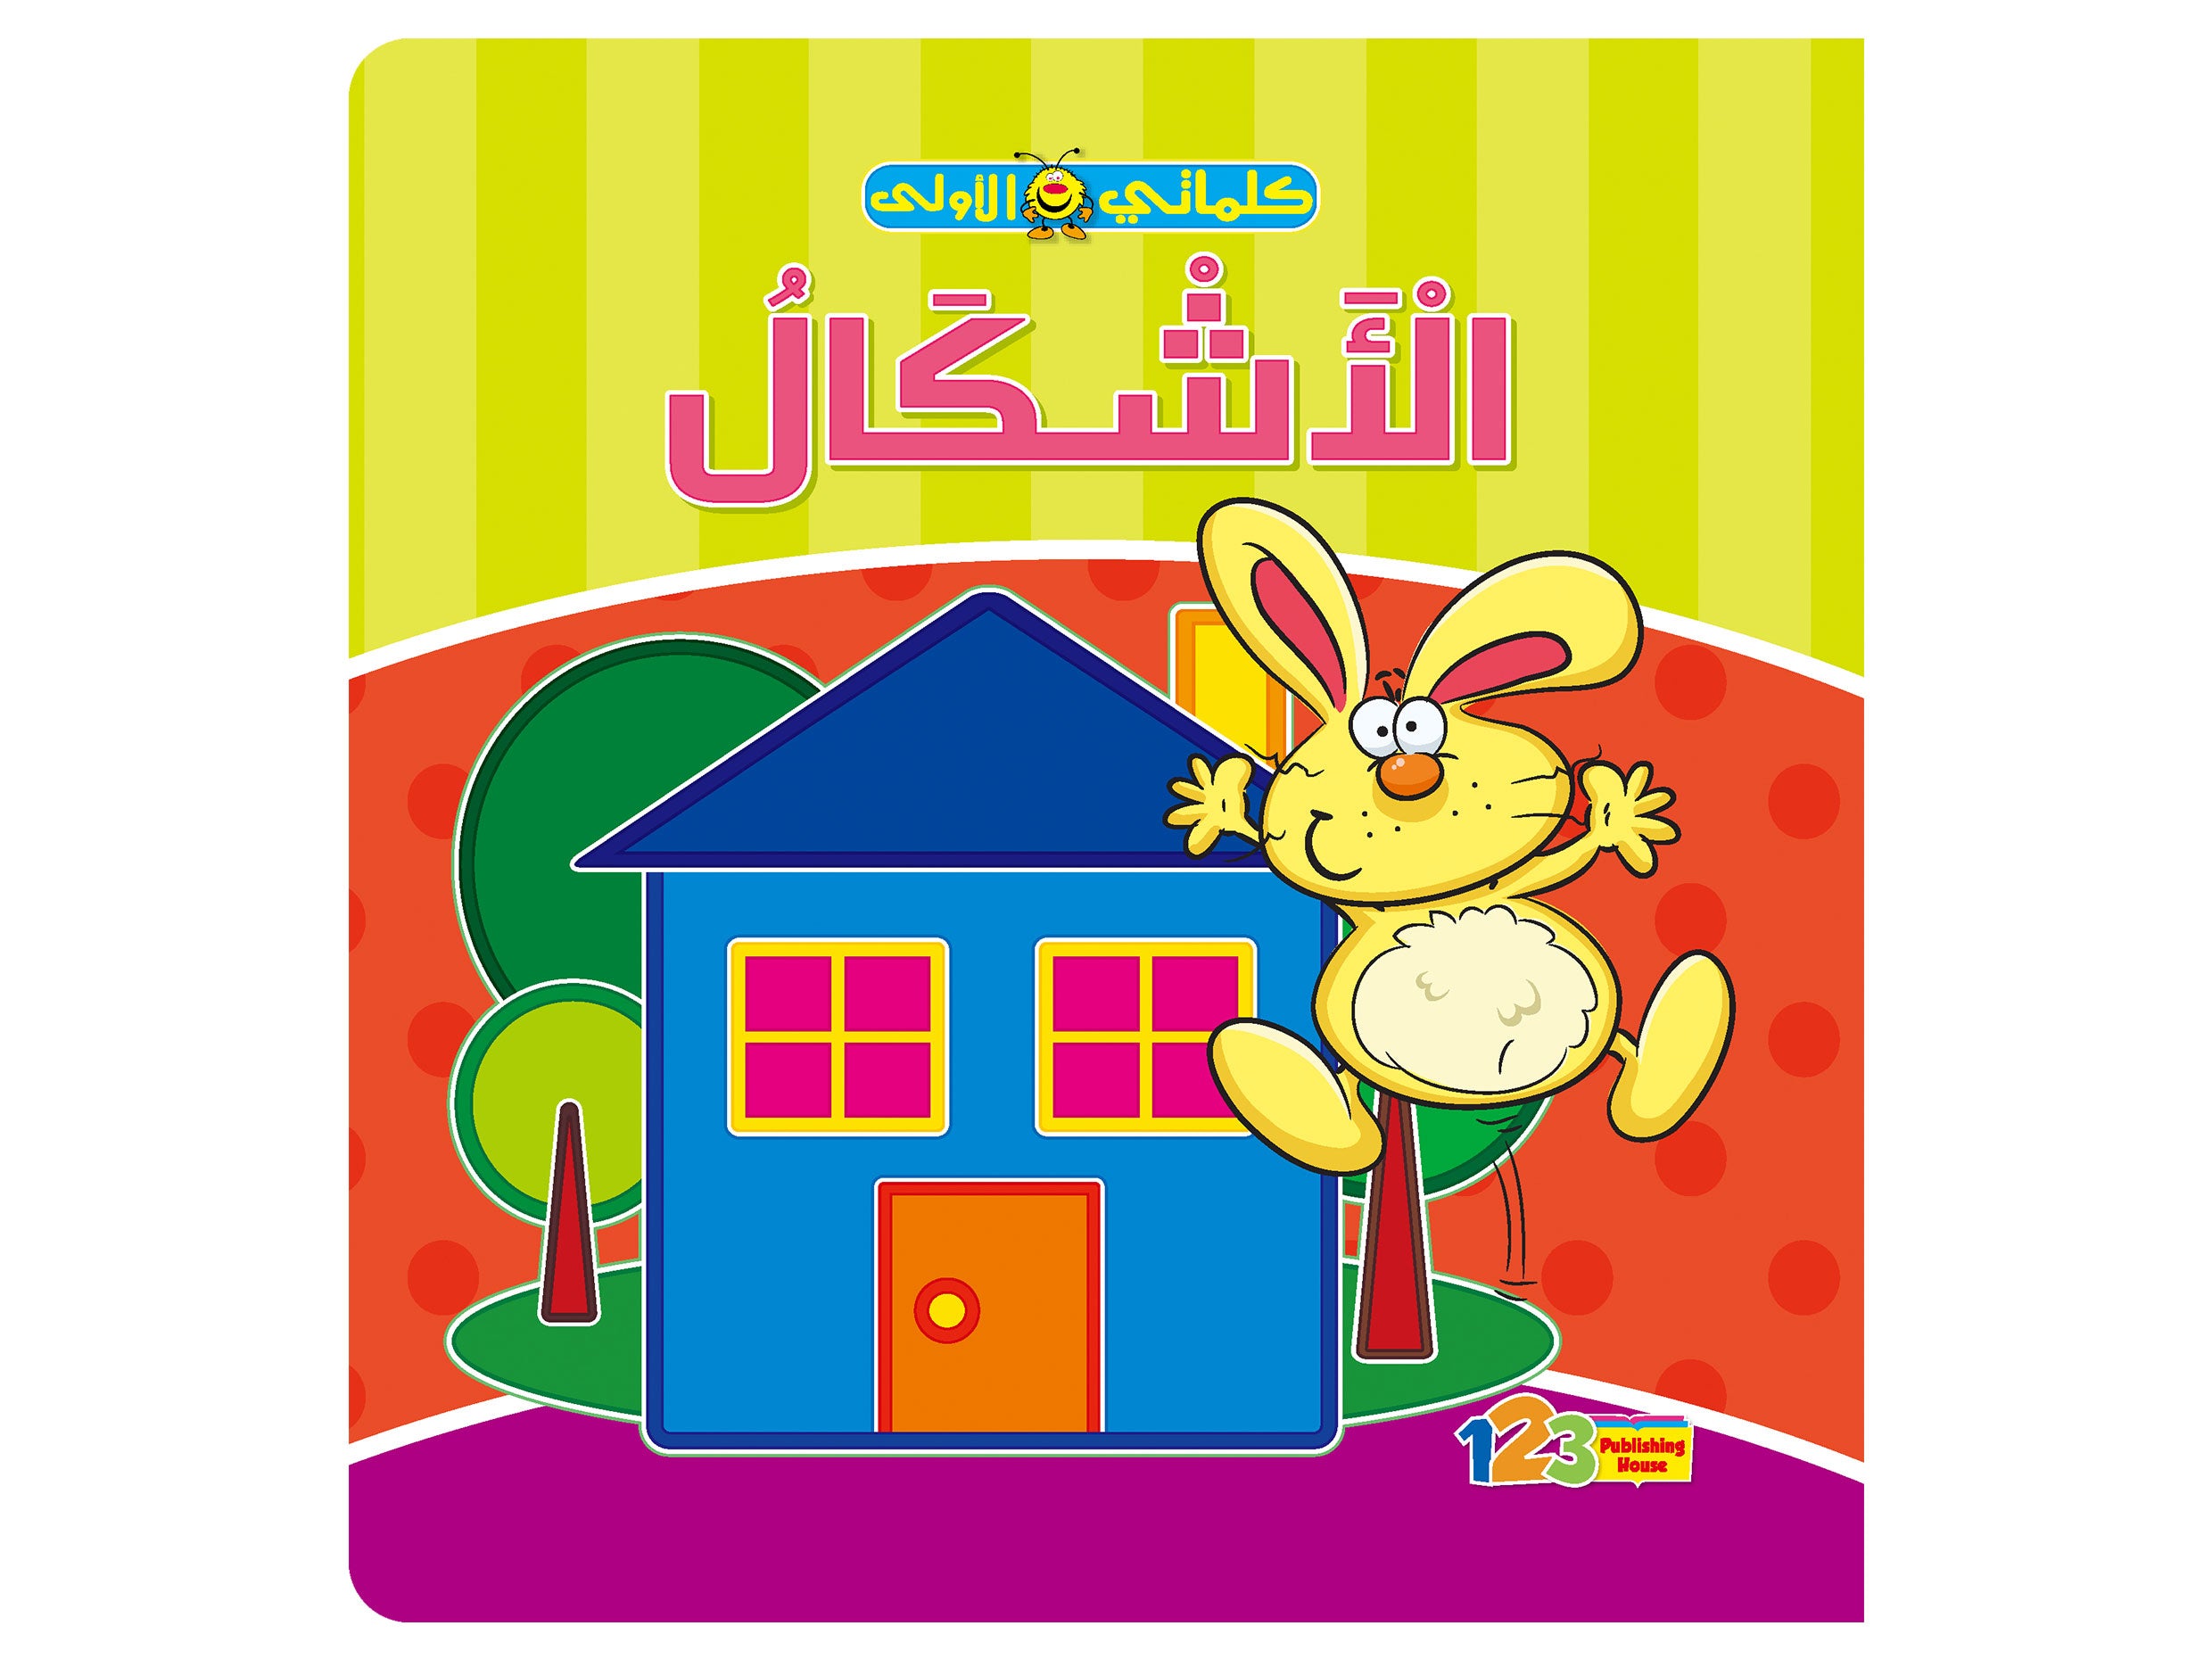  الأشكال - كتاب تعليمي للأطفال باللغة العربية